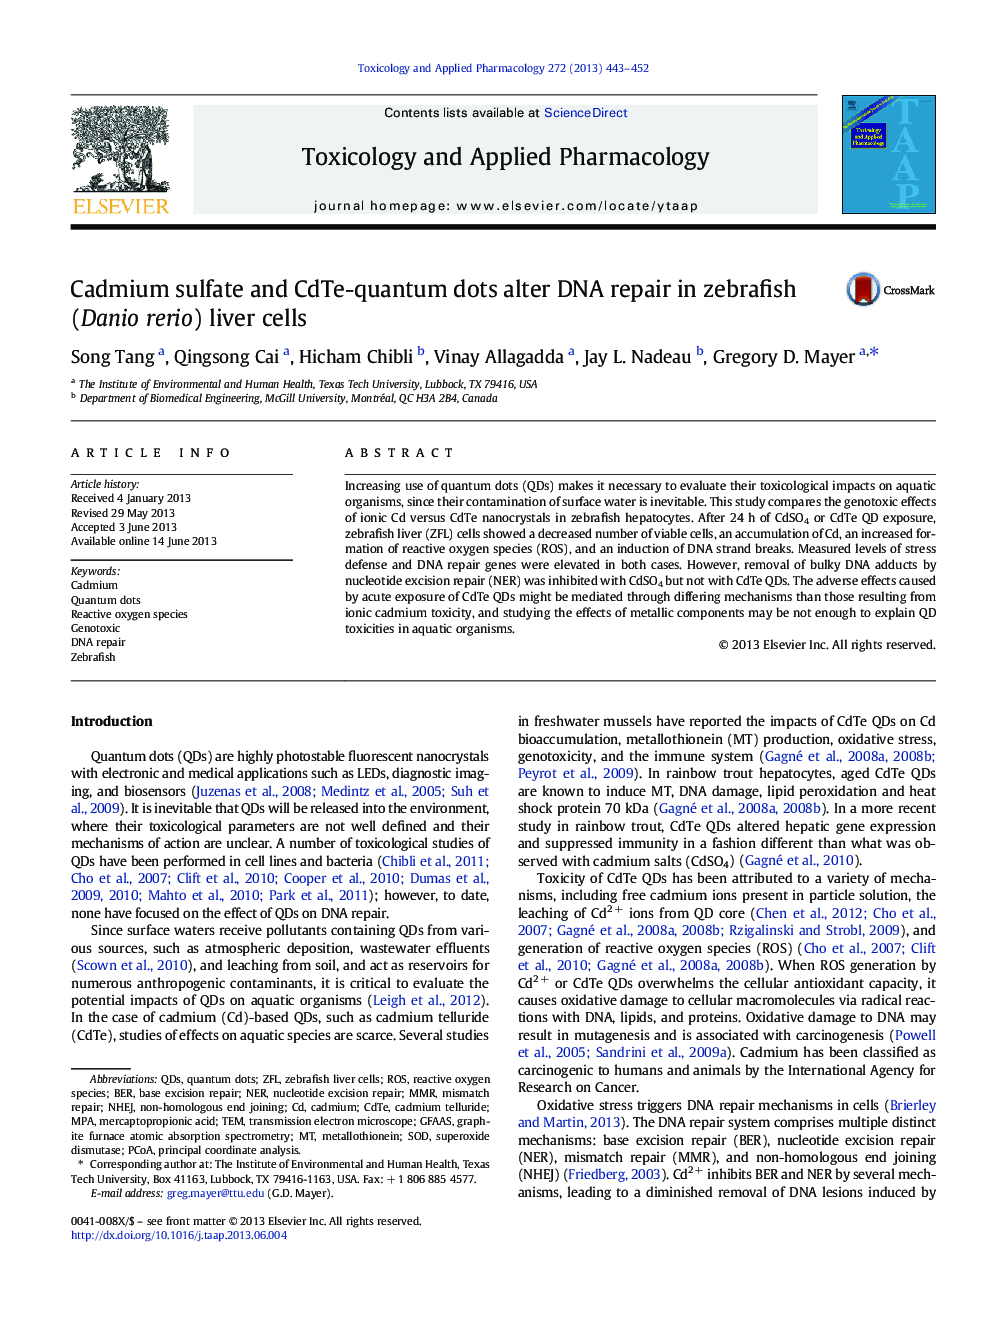 Cadmium sulfate and CdTe-quantum dots alter DNA repair in zebrafish (Danio rerio) liver cells